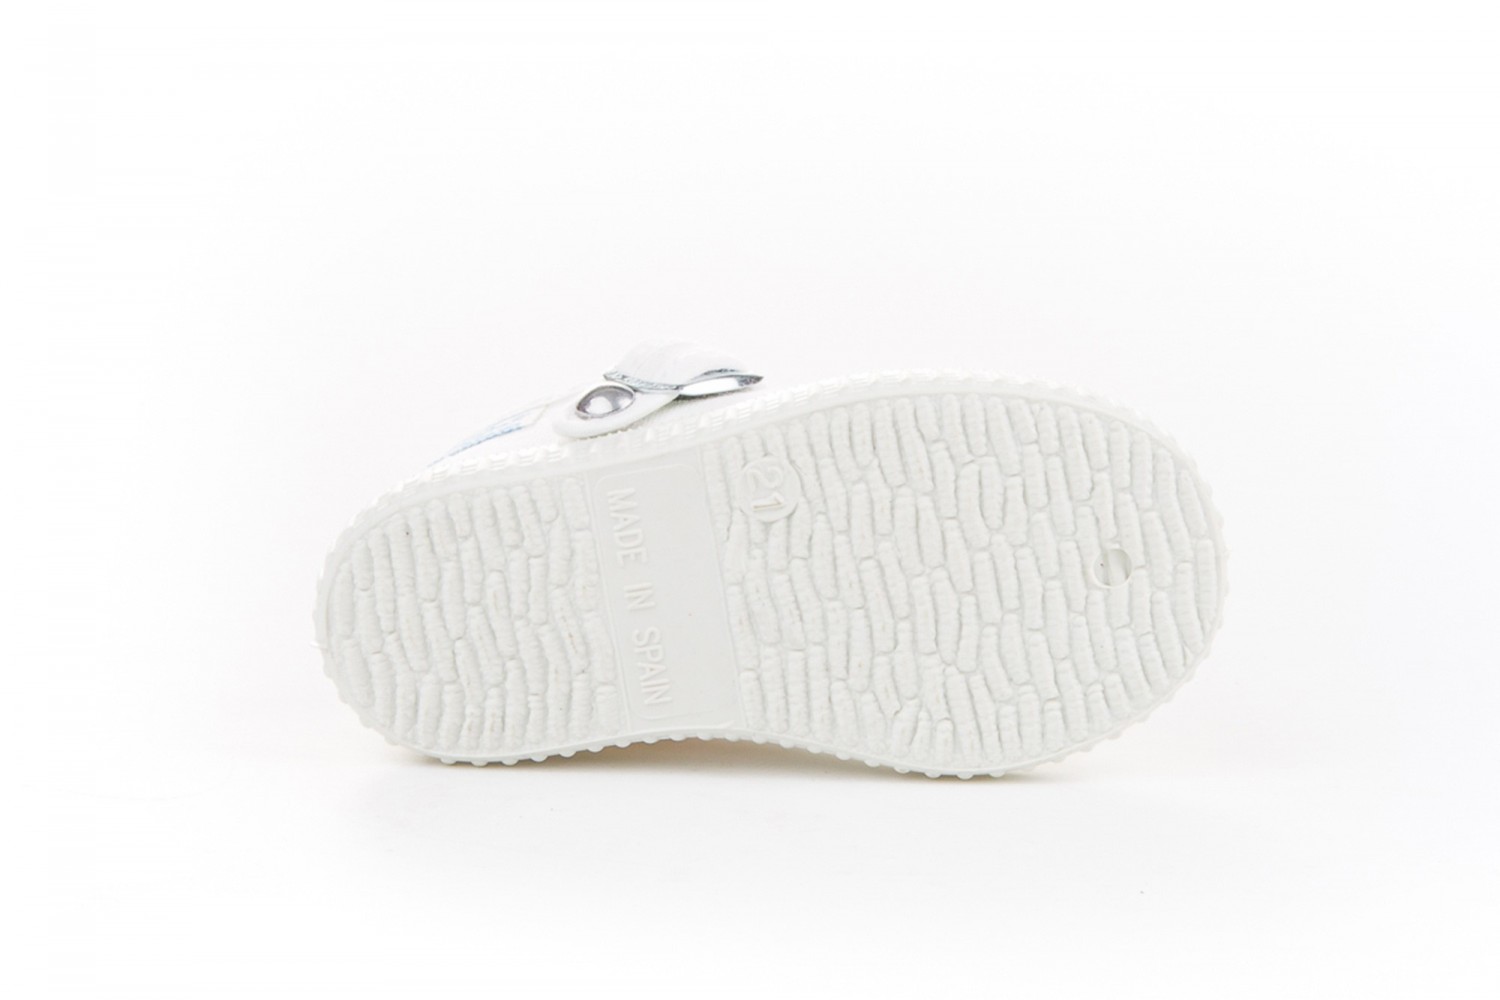 Zapatillas de lona tipo pepito en color blanco, de Victoria - Calzaditos